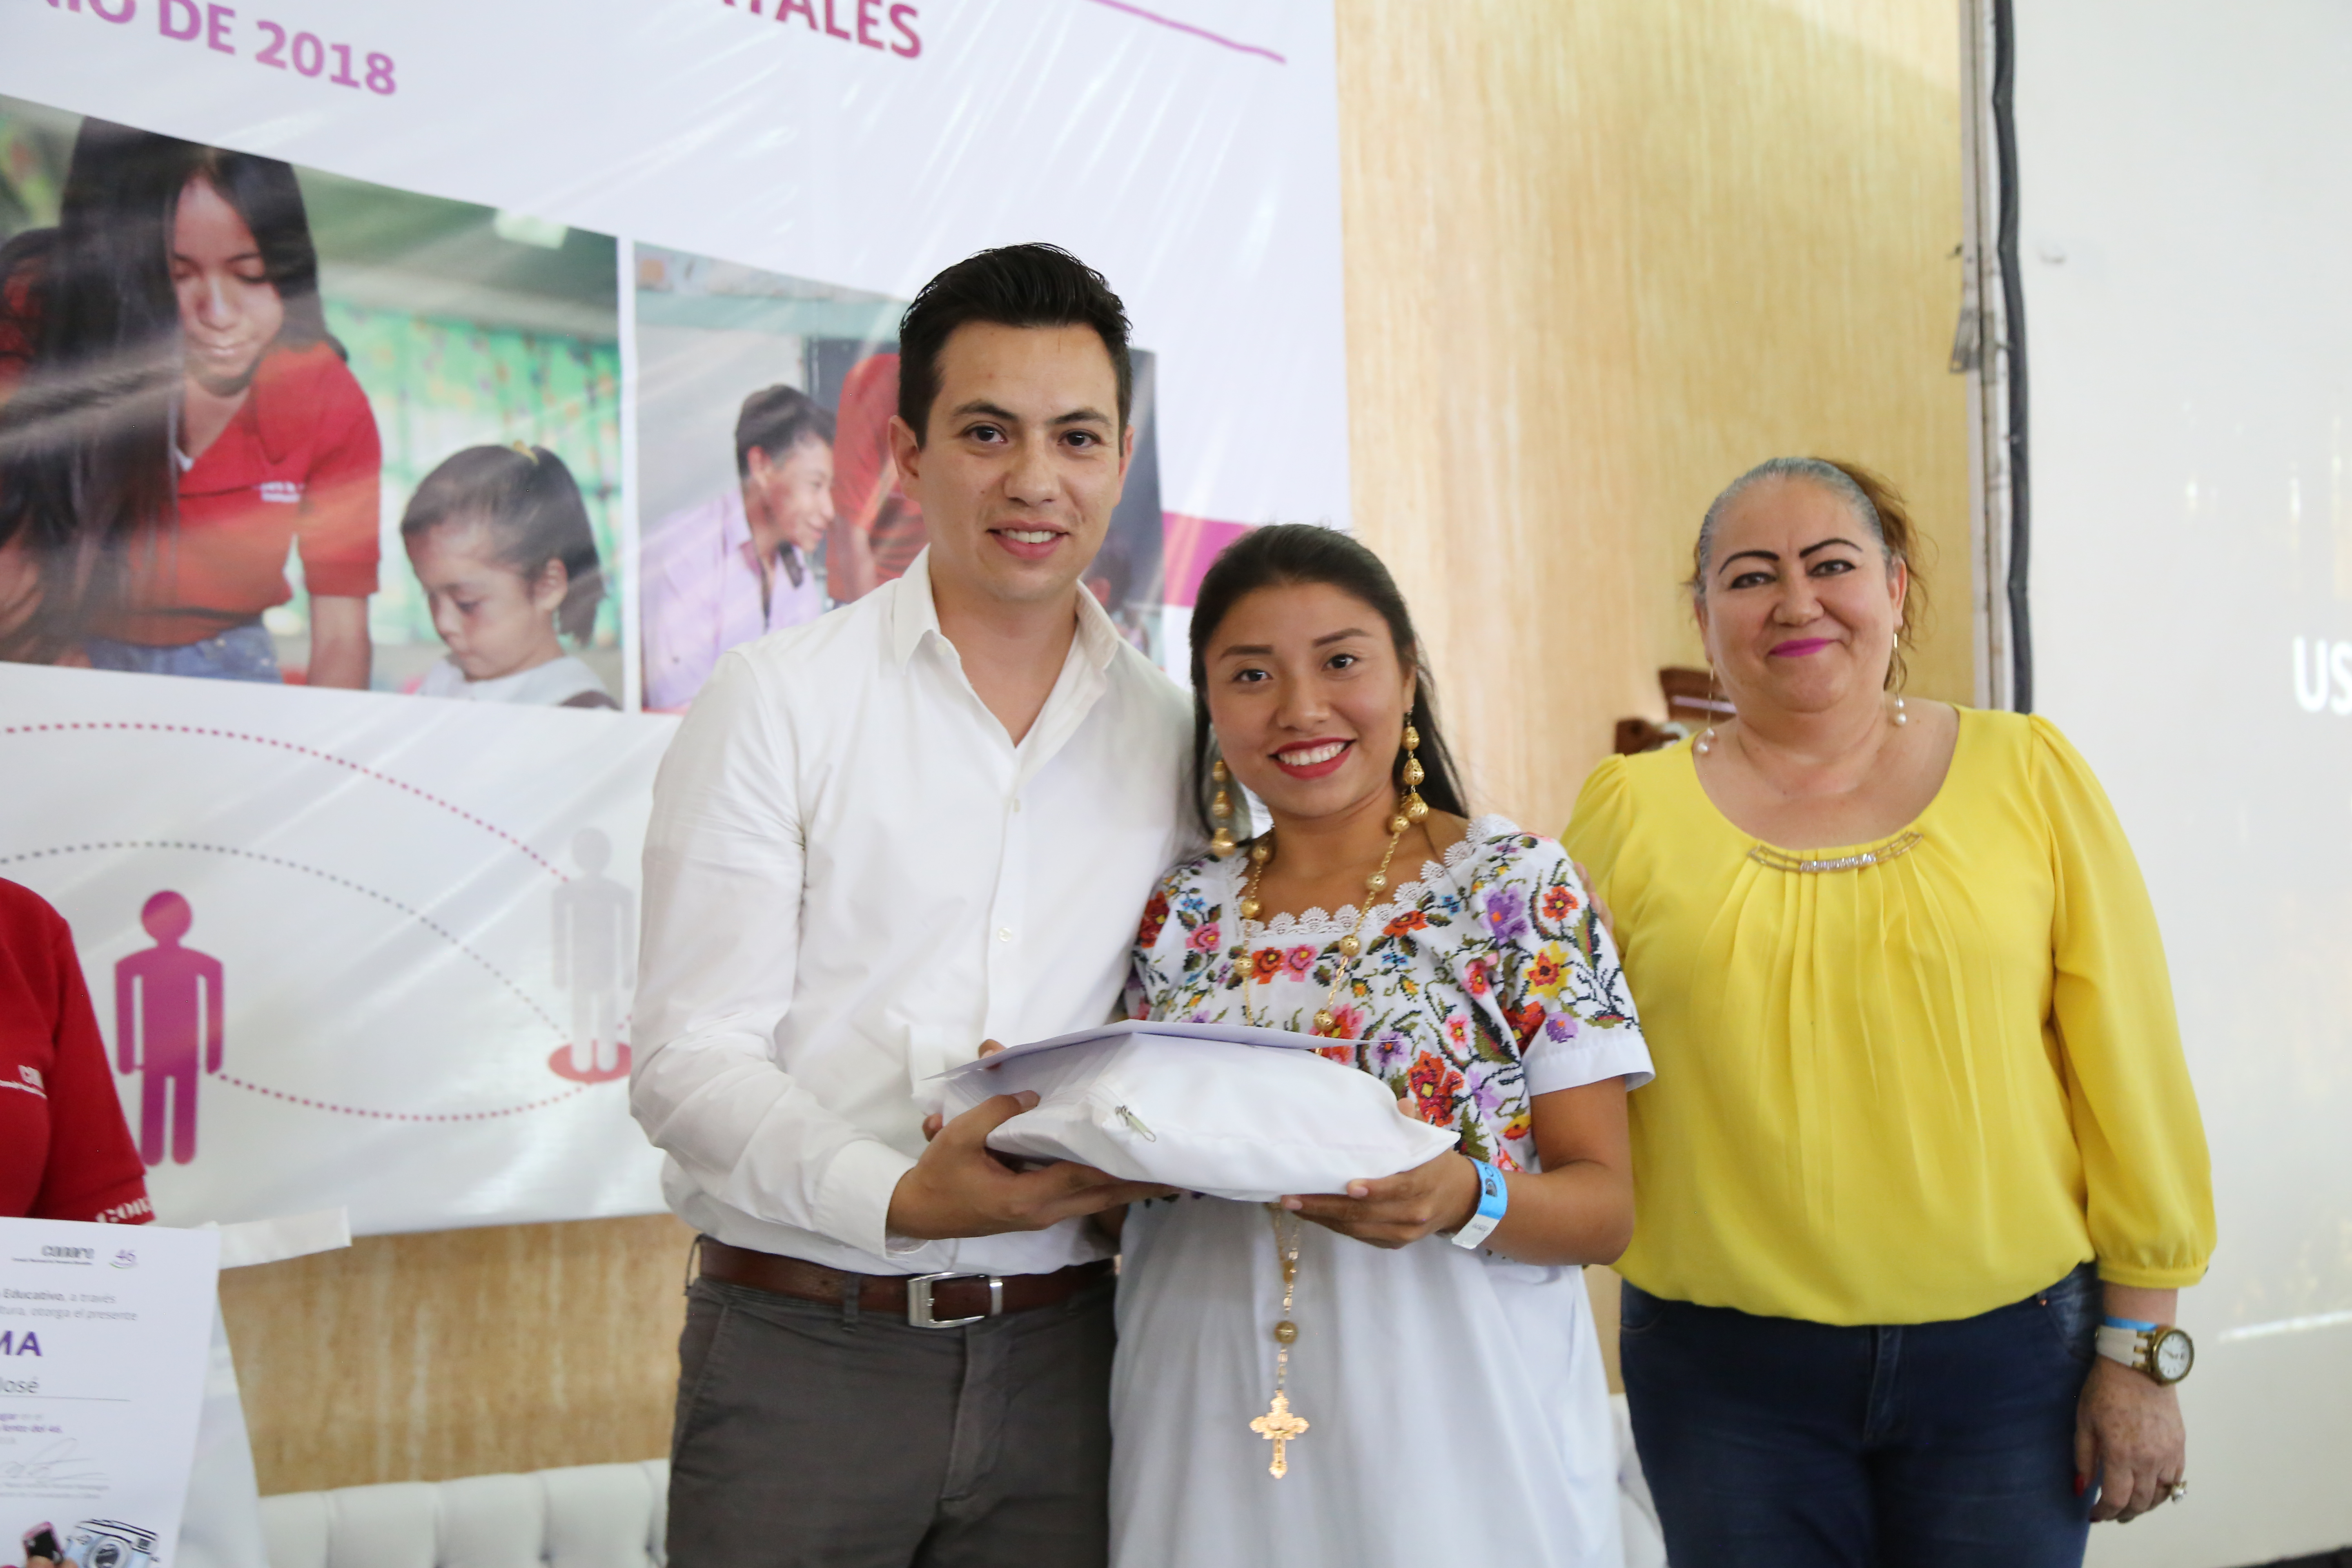 Guadalupe Anahí Moo Chan, líder para la educación comunitaria de Yucatán, fue la ganadora del concurso Ponte la lente del 46.